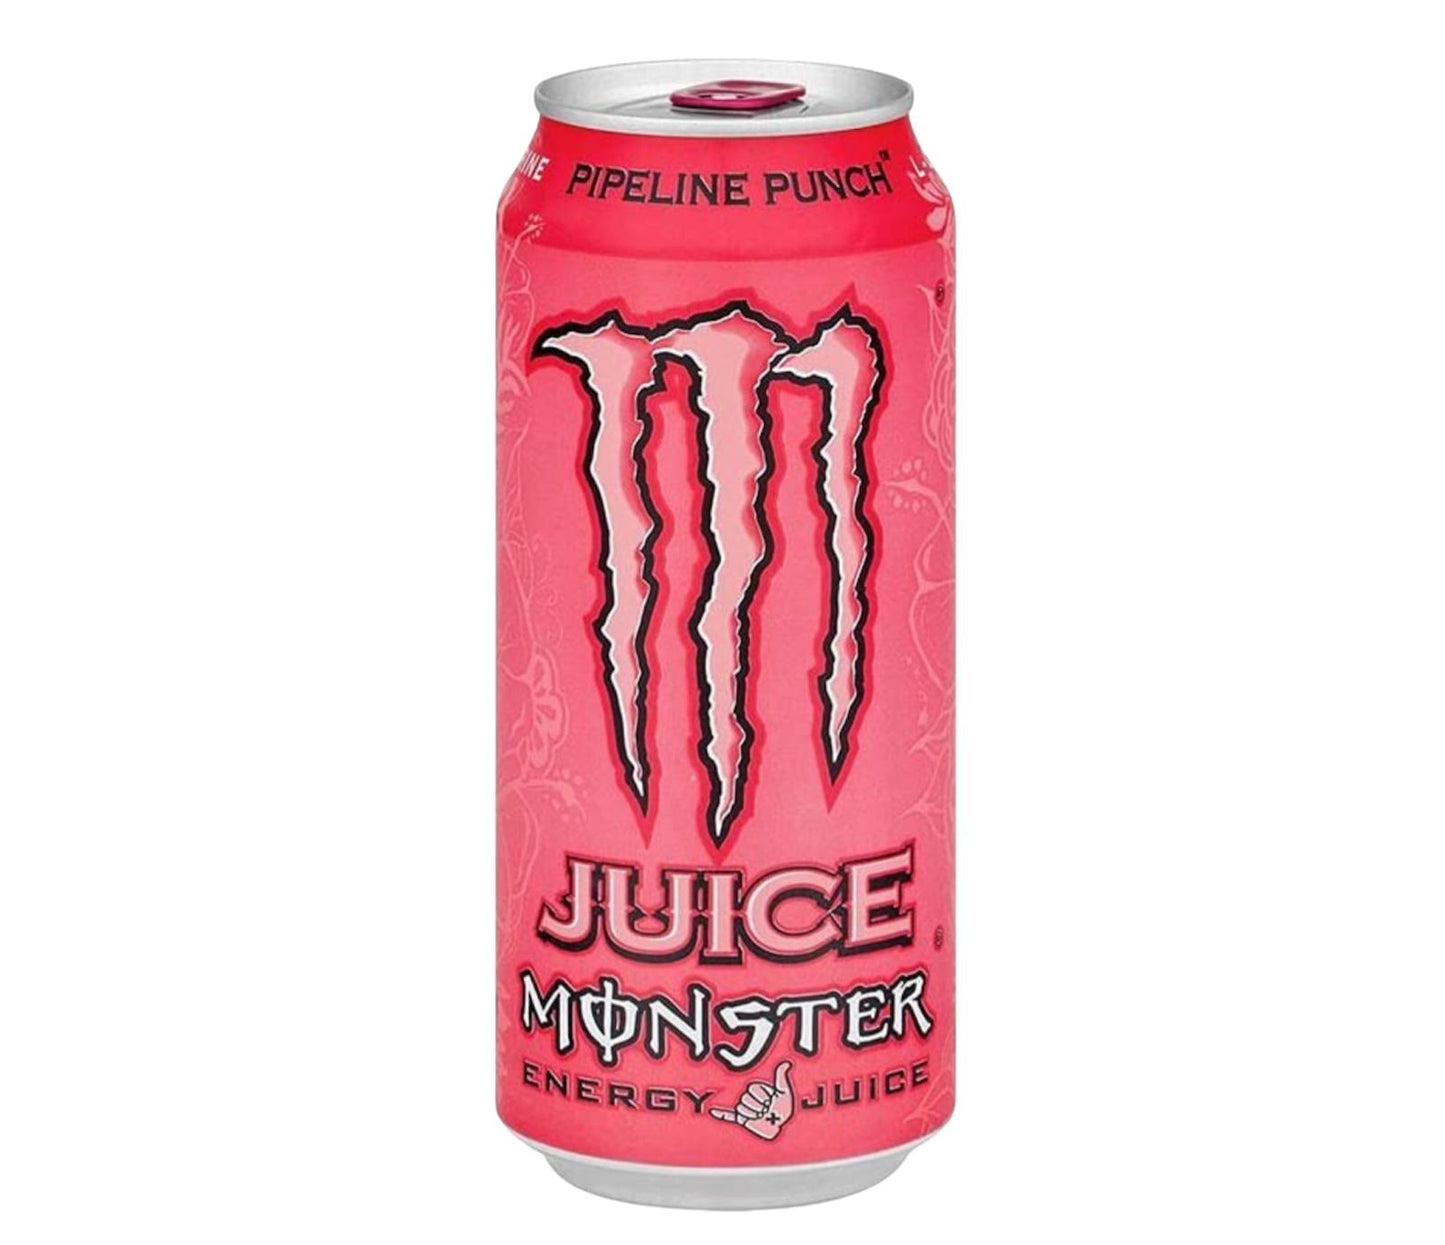 Monster energy juiced pipeline punch lattina da 500ml